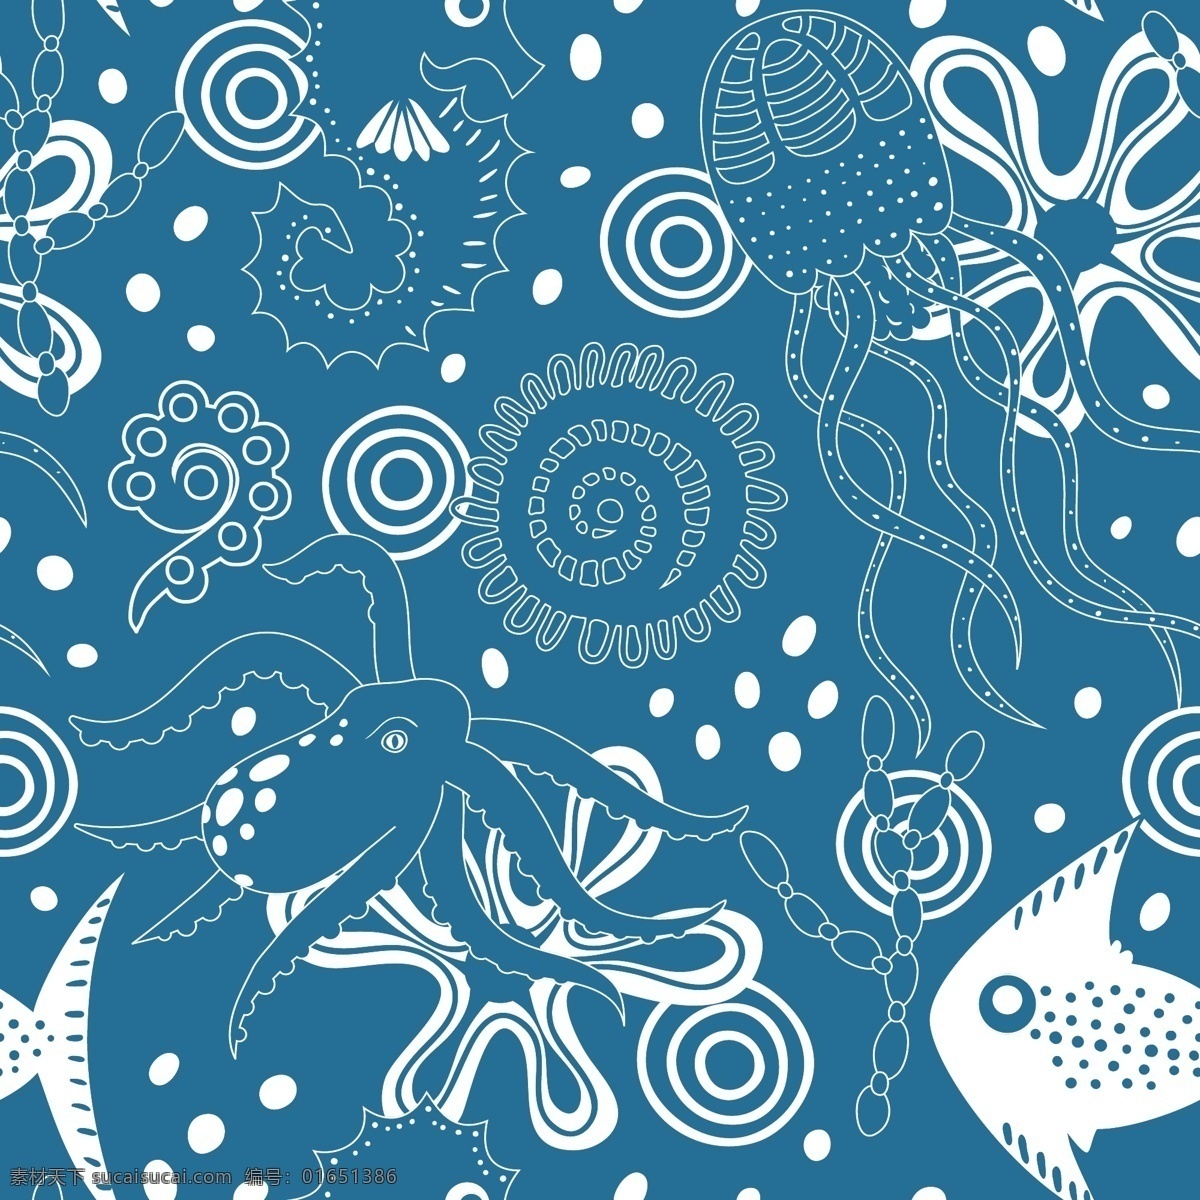 蓝色 卡通 鱼 花纹 背景 图 背景素材 底纹背景 卡通鱼 水母 广告背景图 素材免费下载 模版 矢量 海洋生物 图画 八爪鱼